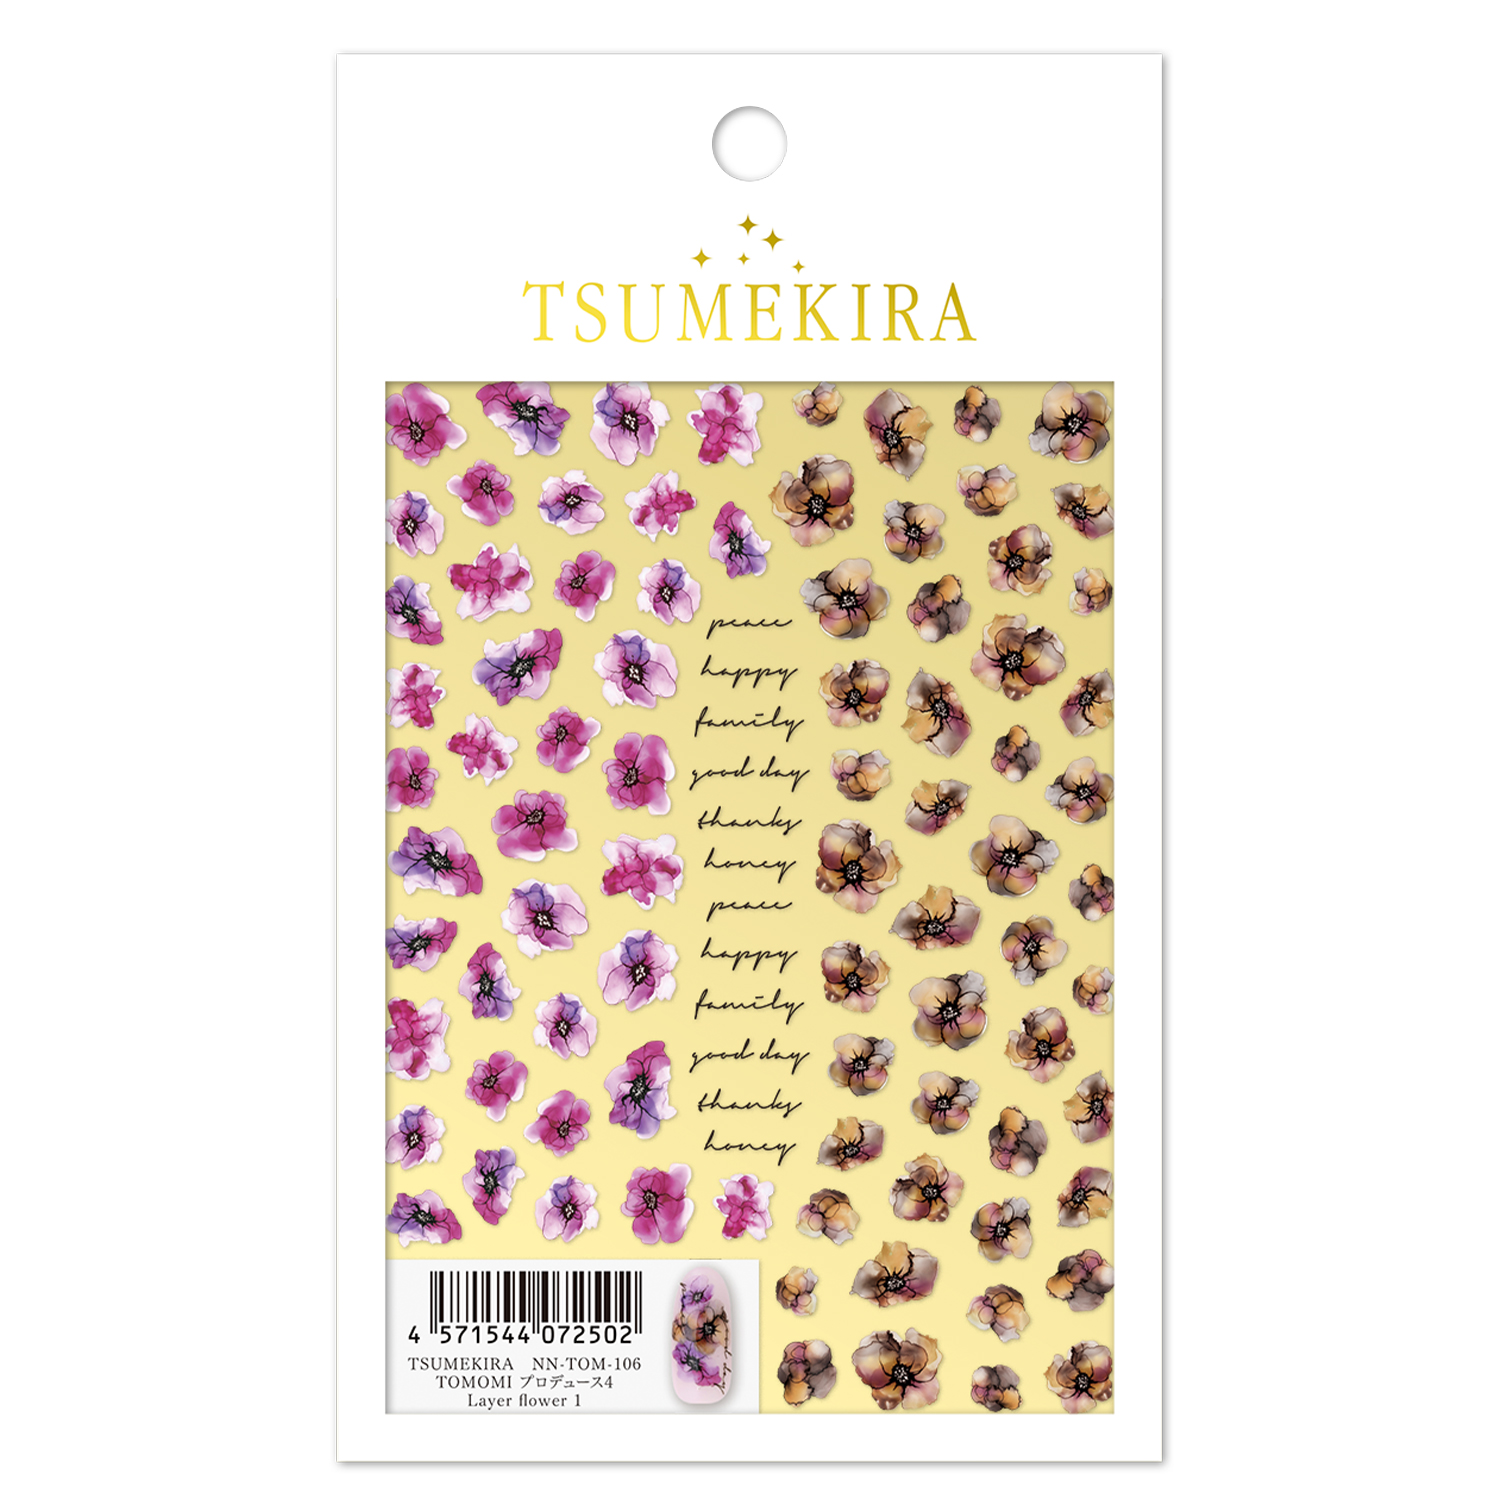 【お取り寄せ・返品不可】NN-TOM-106  TSUMEKIRA「ツメキラ」 TOMOMI プロデュース4 Layer flower 1  (枚)